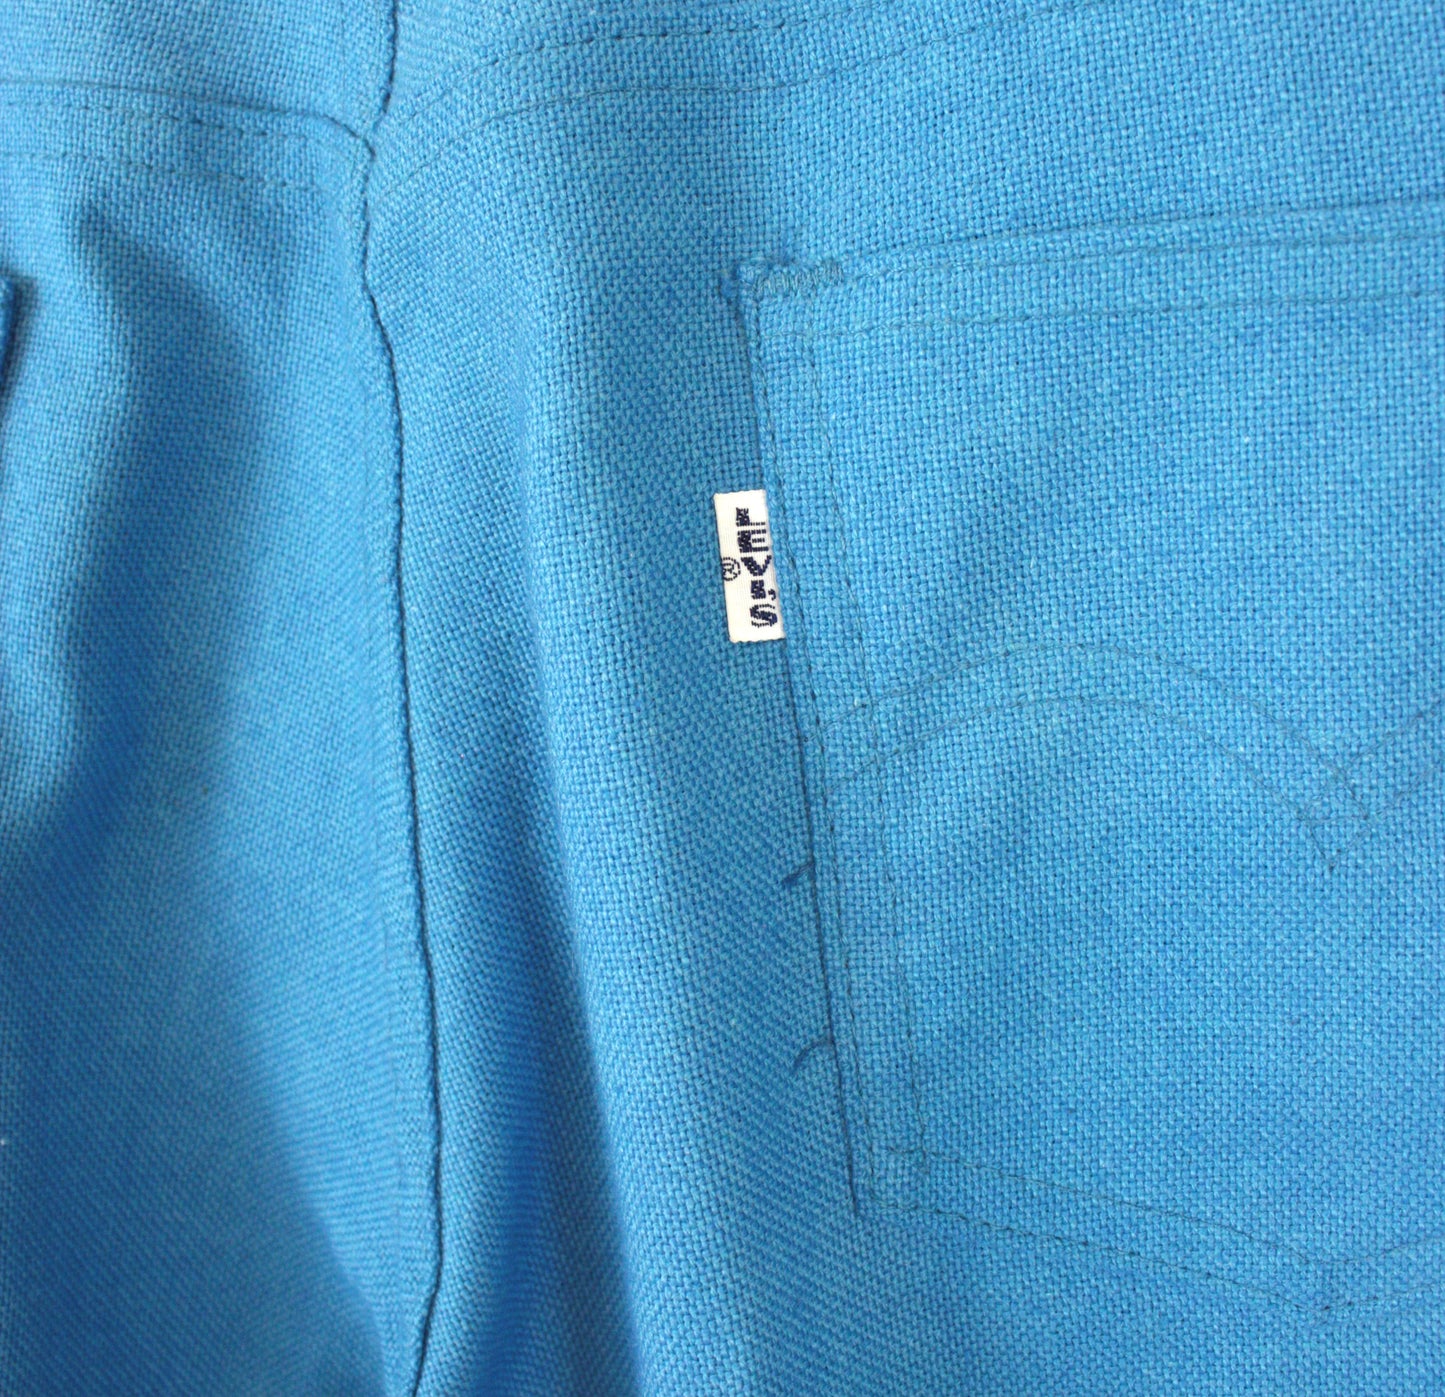 Vintage 1960's Levi's Jeans Rich Blue Trouser 31" x 30"